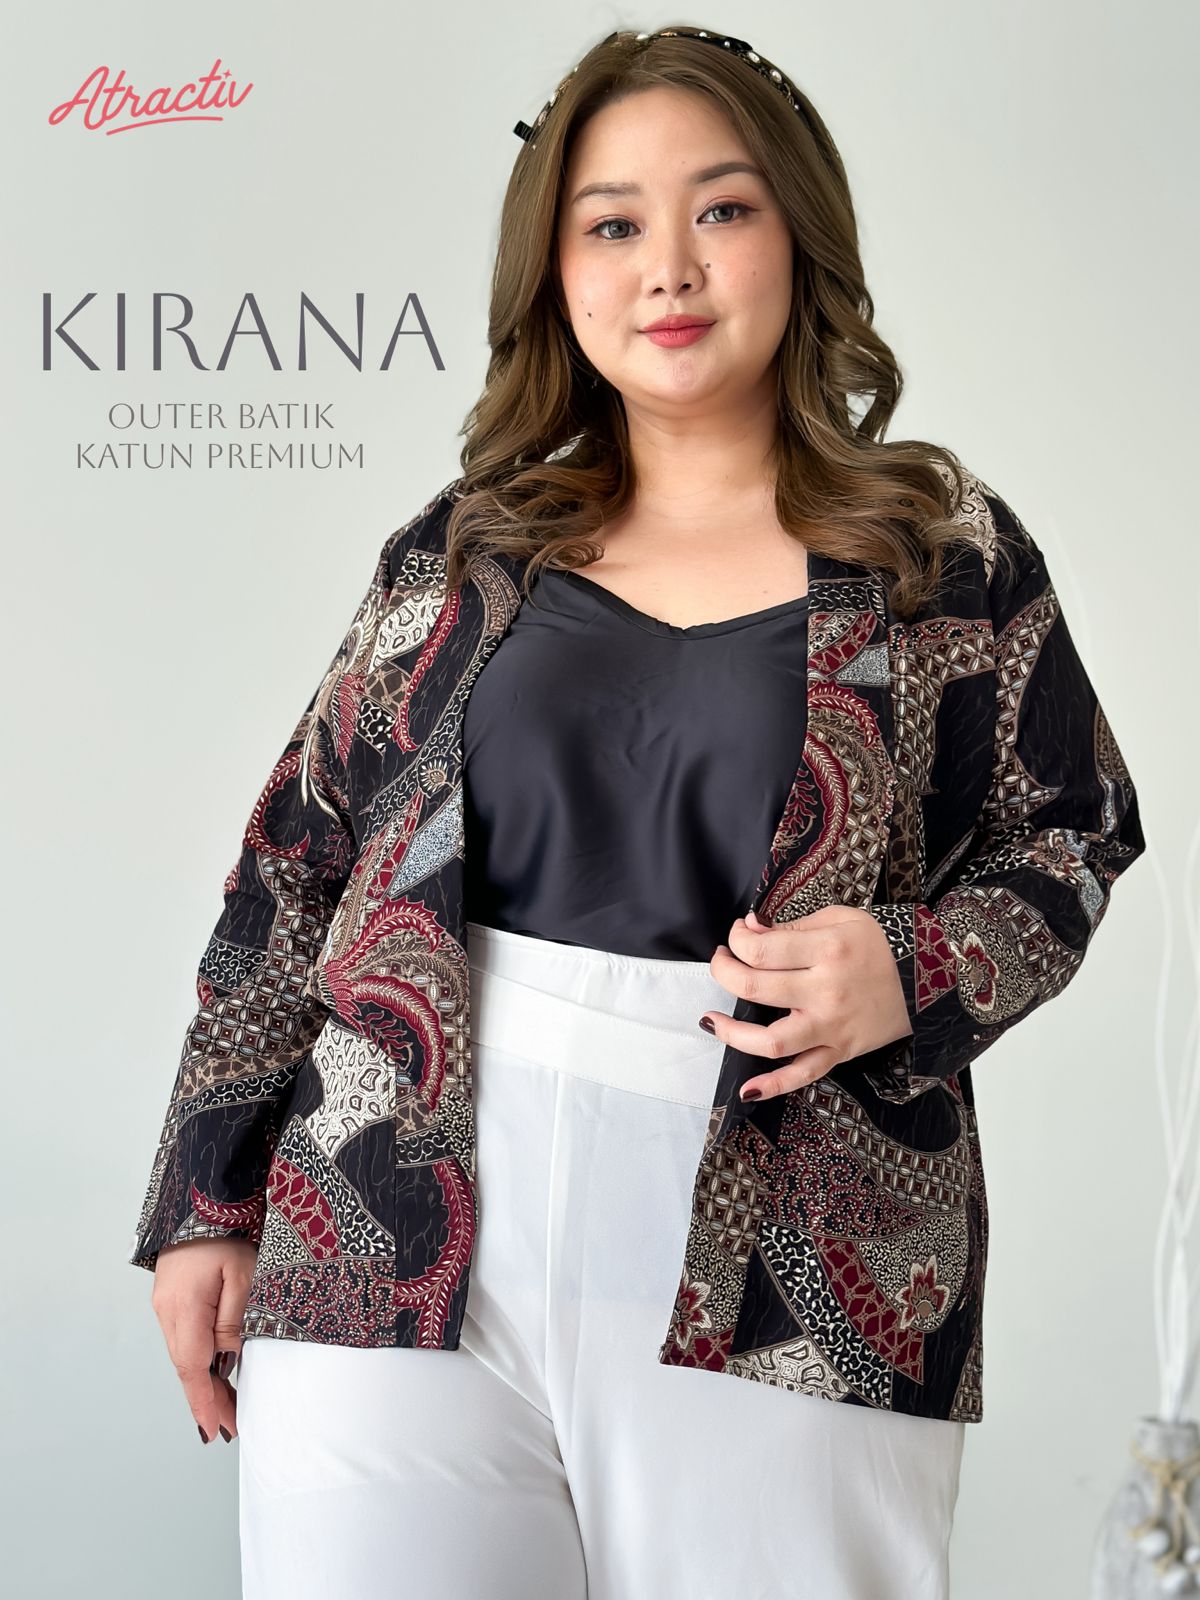 Outer Batik Katun Kirana Hitam Atractiv